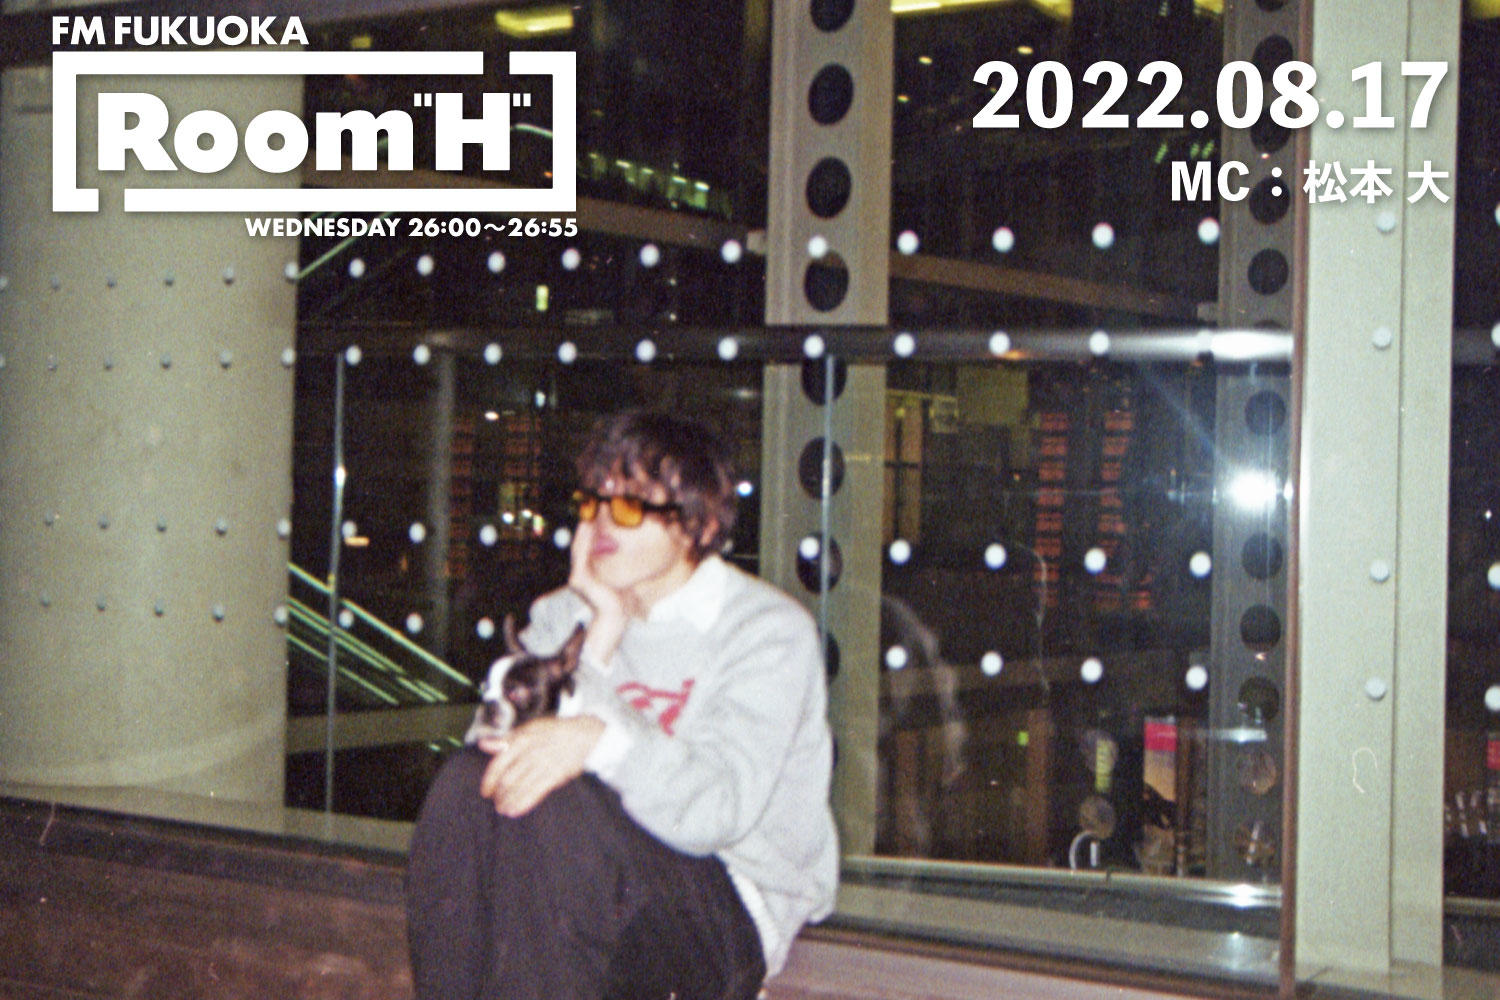 【読むラジオ】MC：松本大 近況報告＆最近のお気に入りの楽曲を紹介！「Room H」 -2022.08.17-